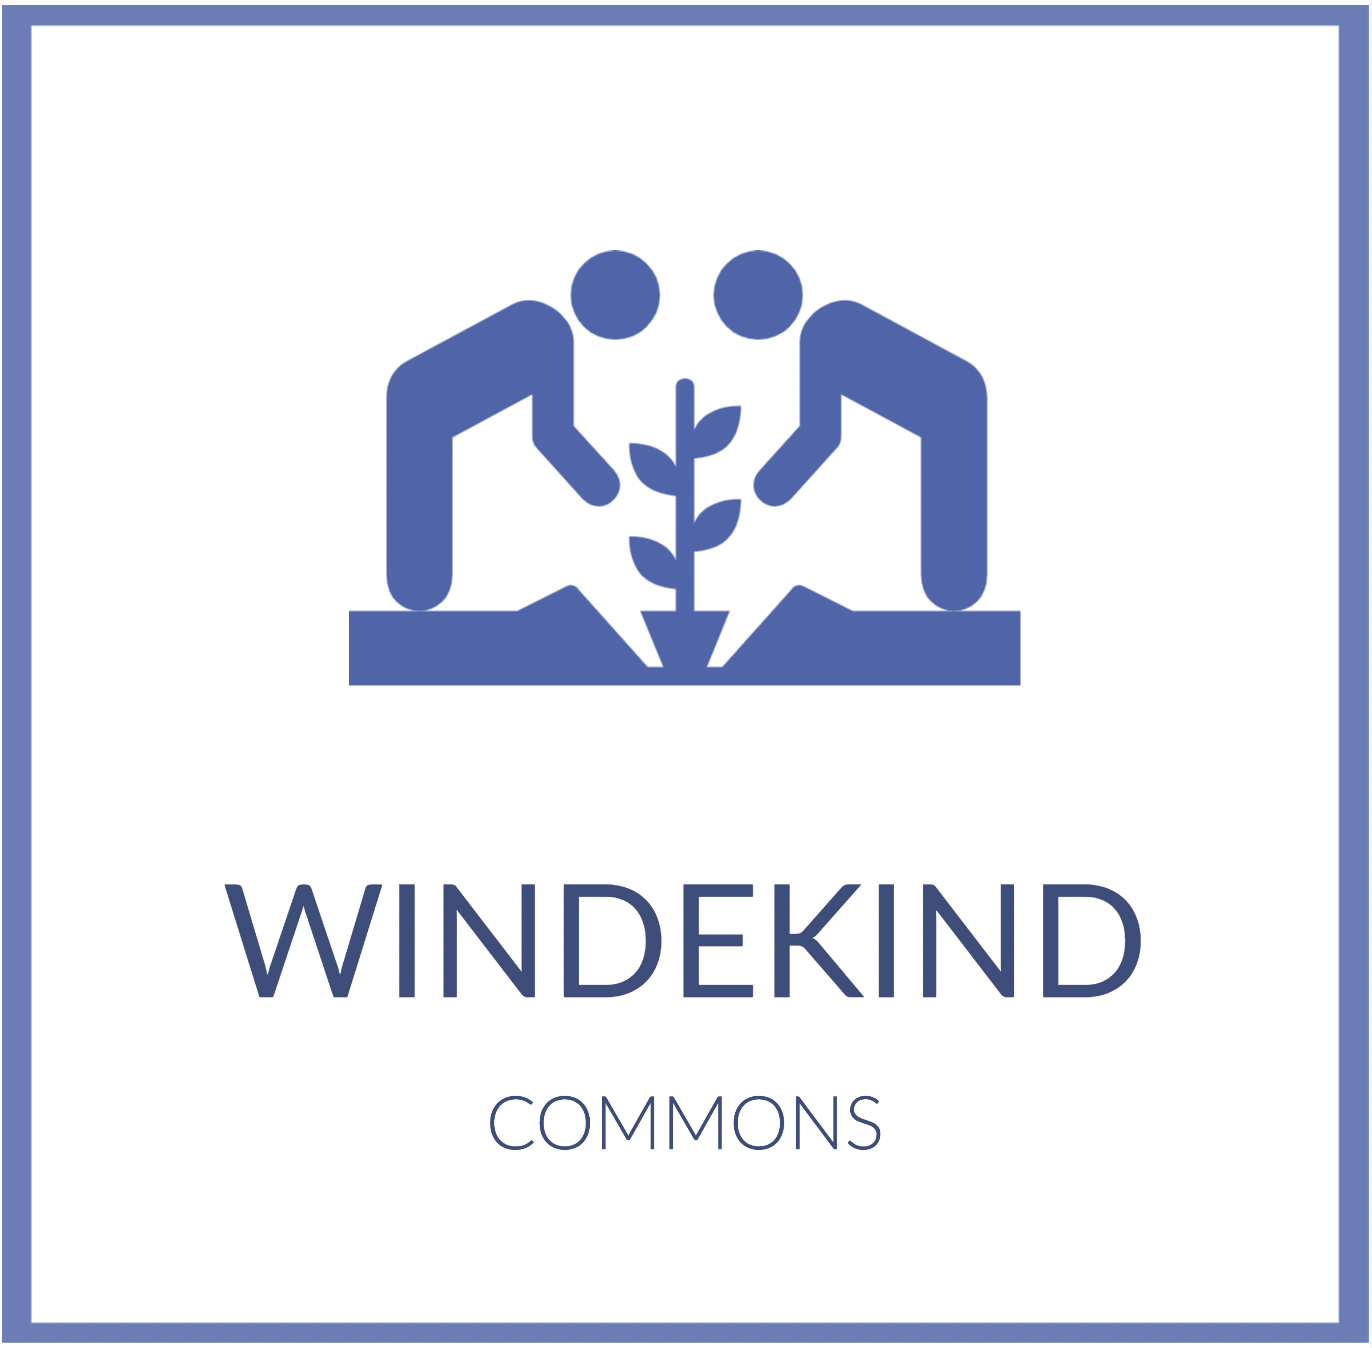 Windekind Commons Cohousing